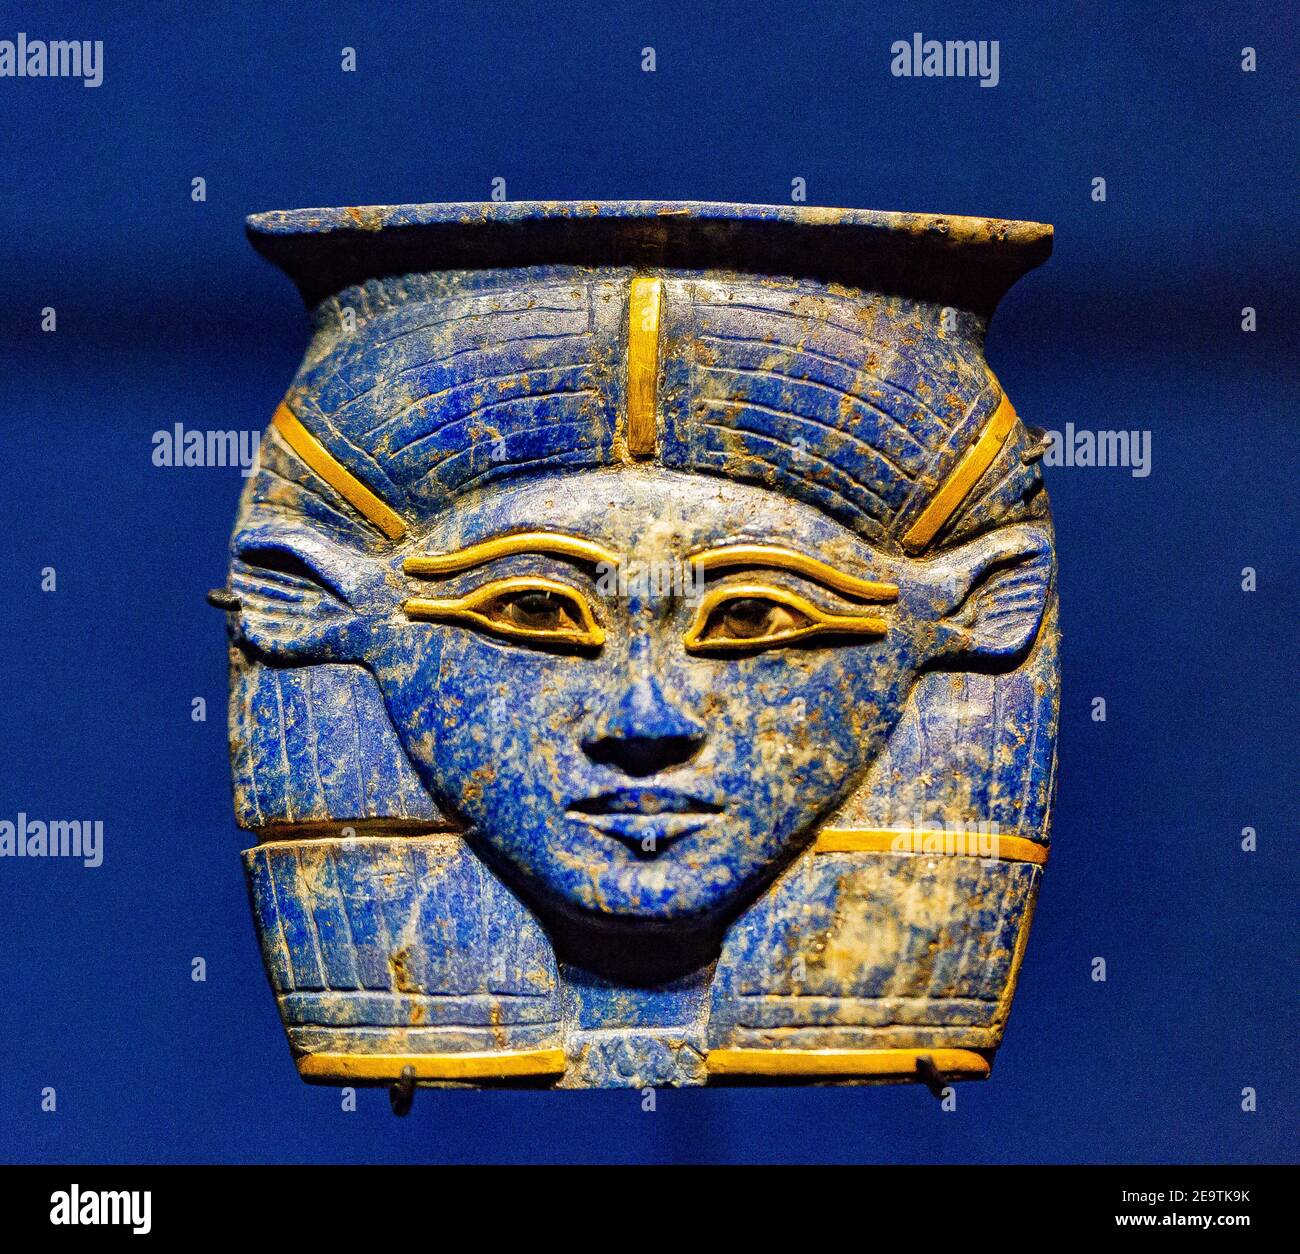 Museo Egizio, pendente trovato nella tomba di un principe Sheshonq a Memphis. Raffigura la testa della dea Hathor, con le orecchie di vacca. Foto Stock